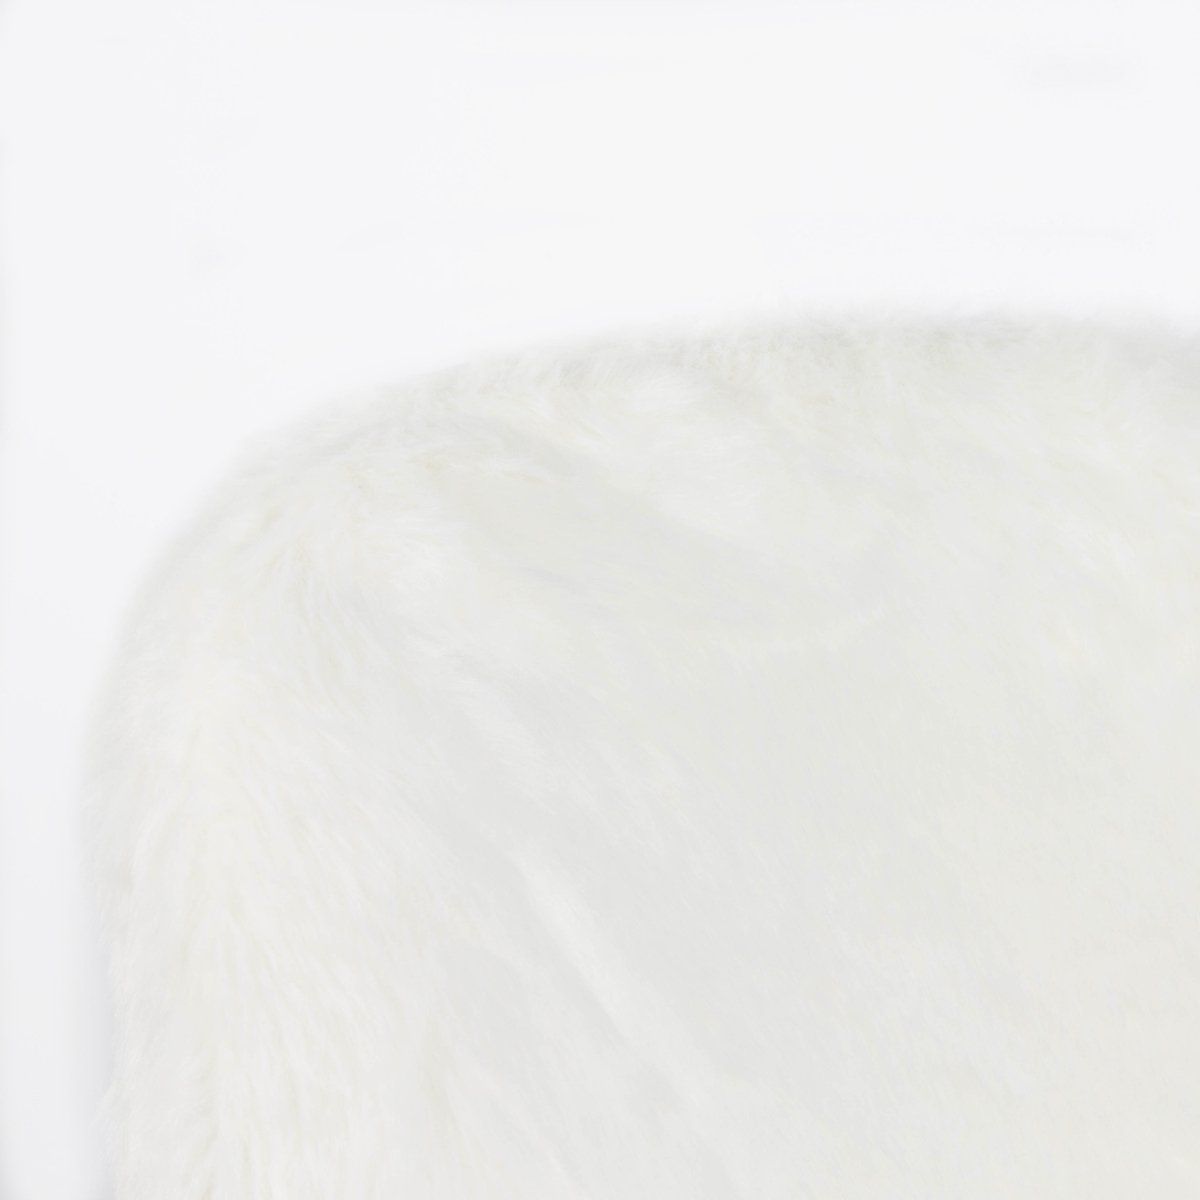 Chaise scandinave IRIS blanche en acrylique et hevea clair